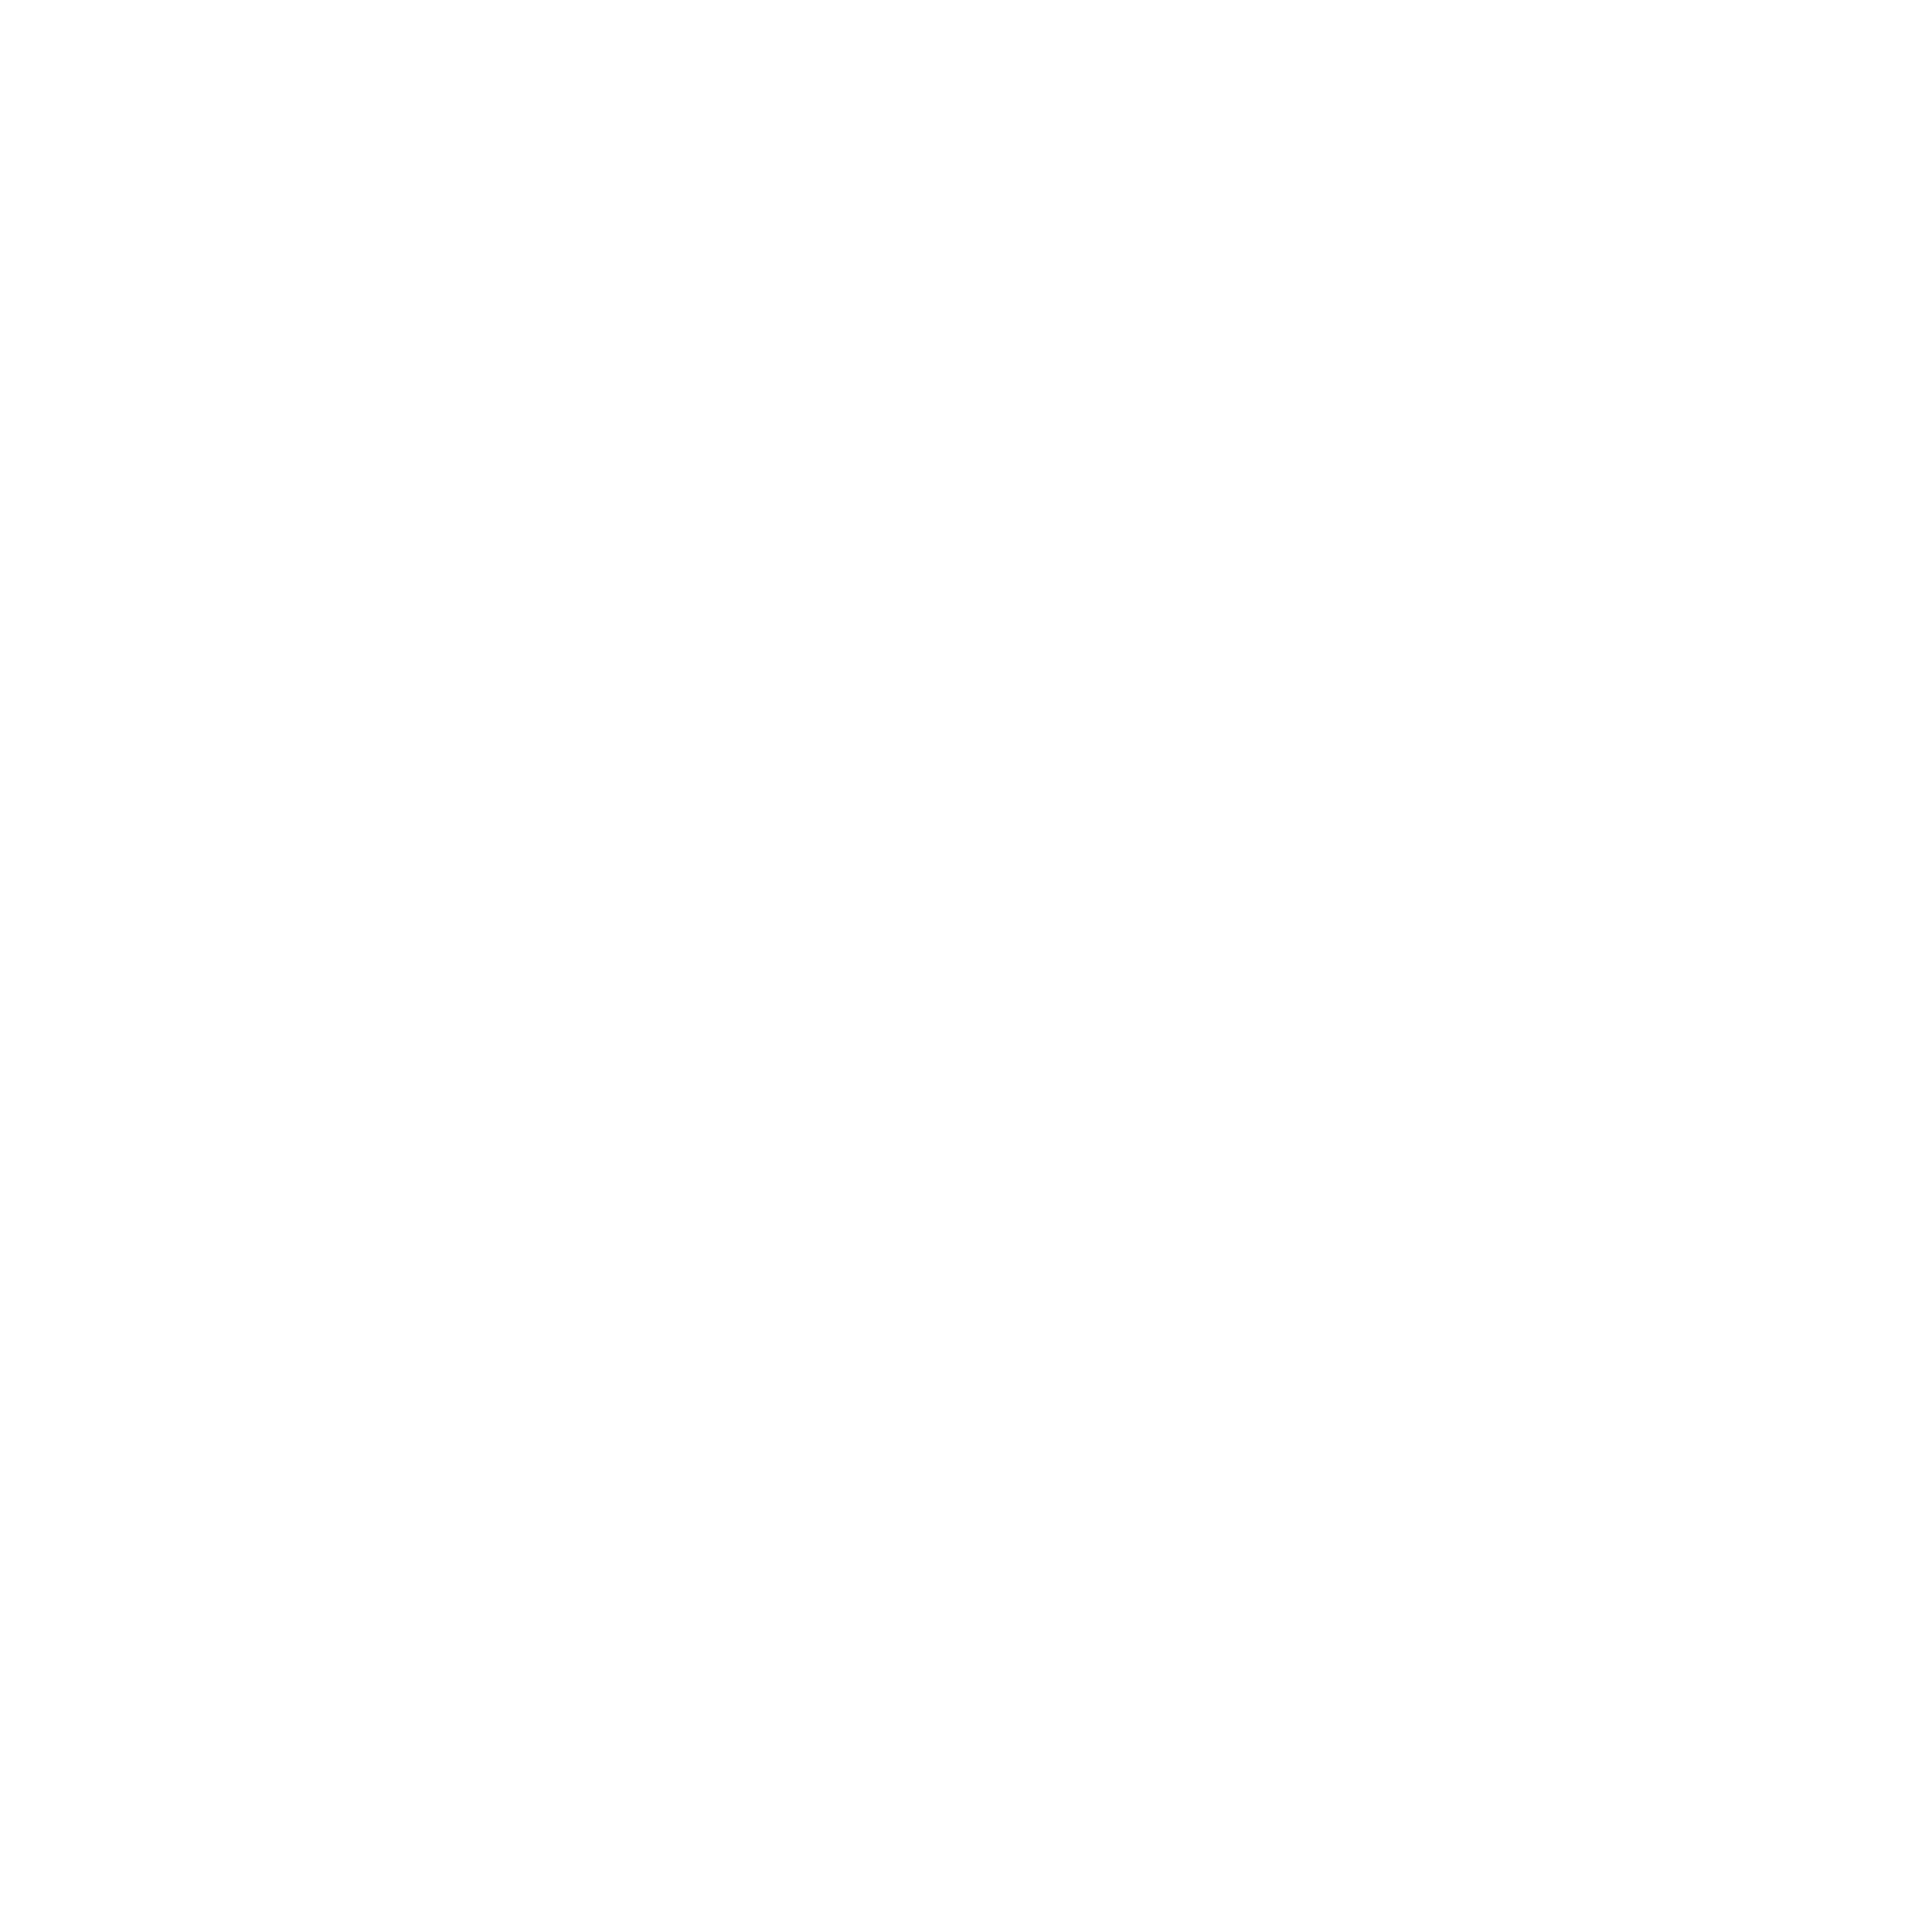 juniper-networks-logo-black-and-white